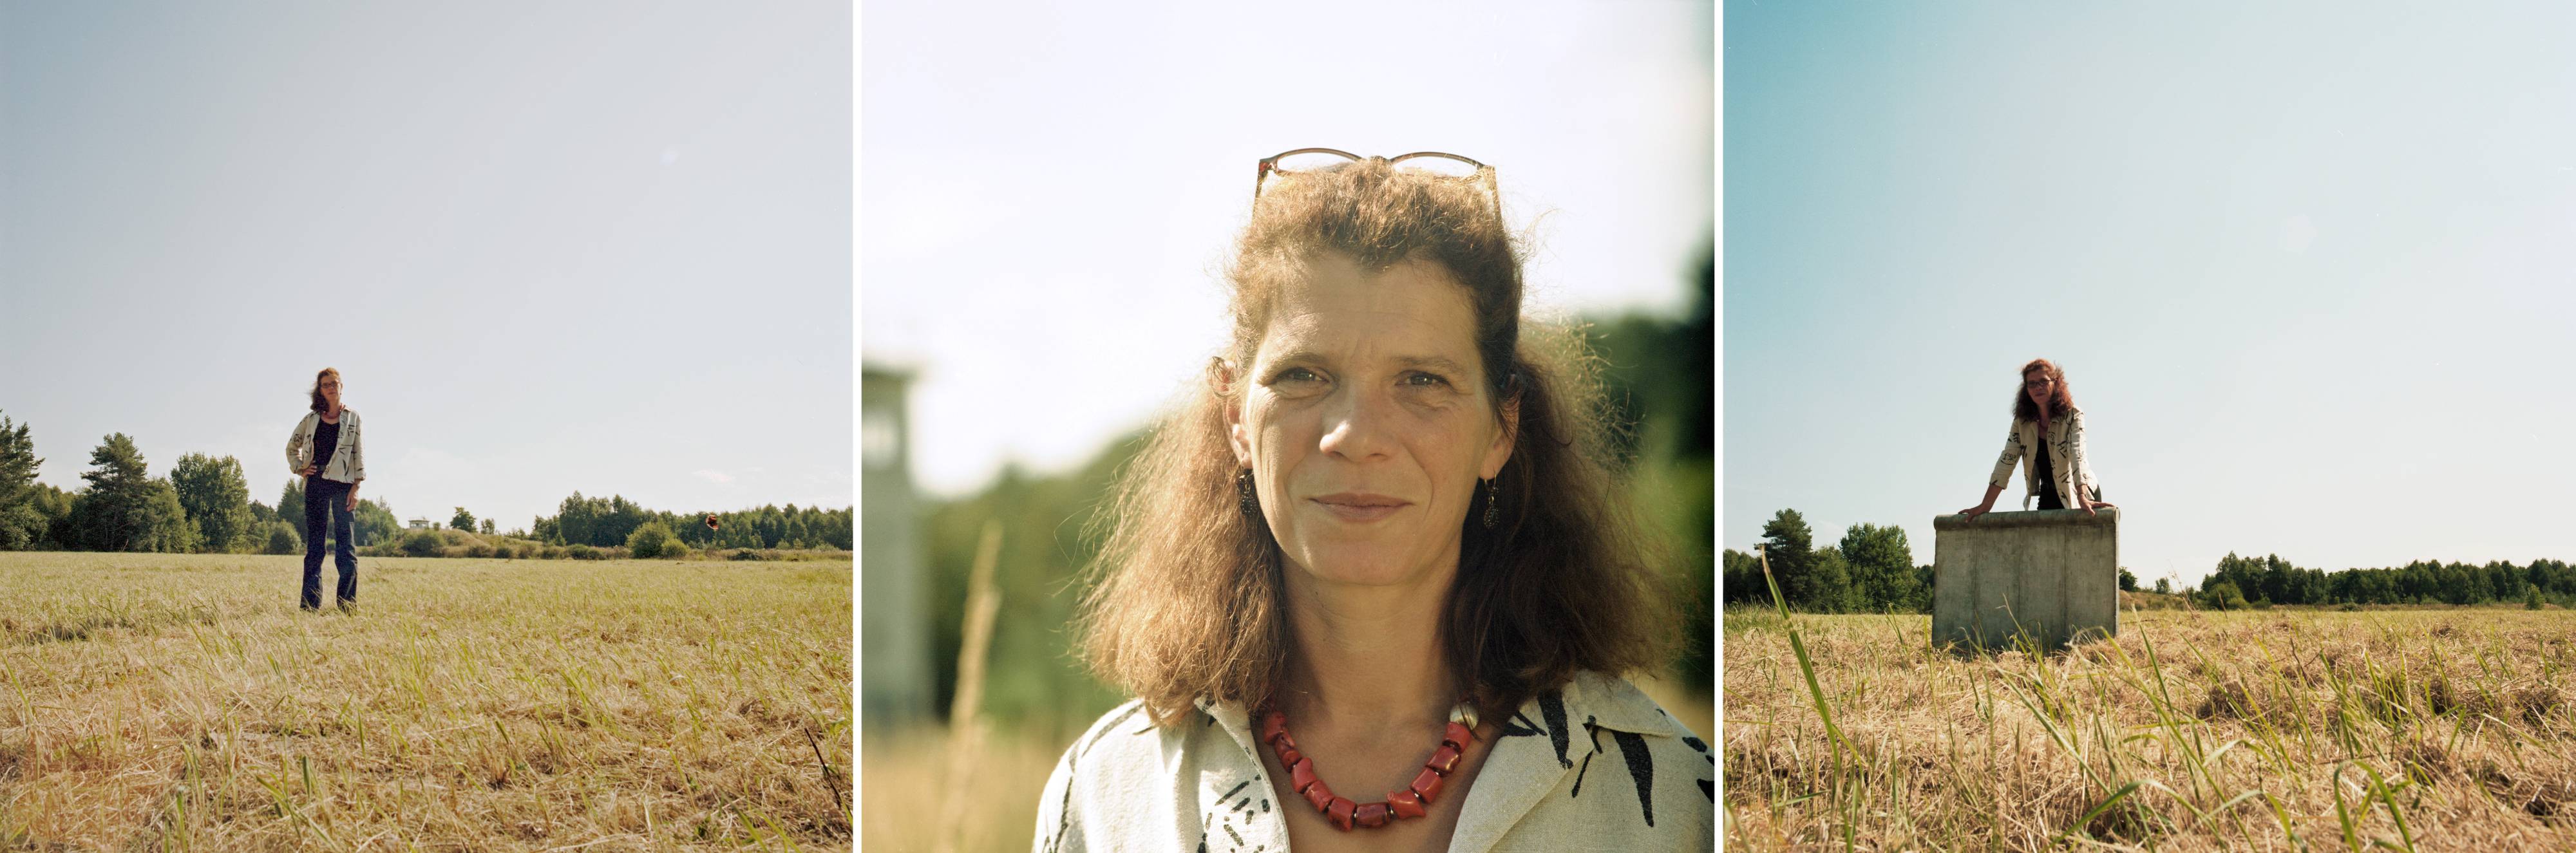 Dorothée Menzner (Die Linke)